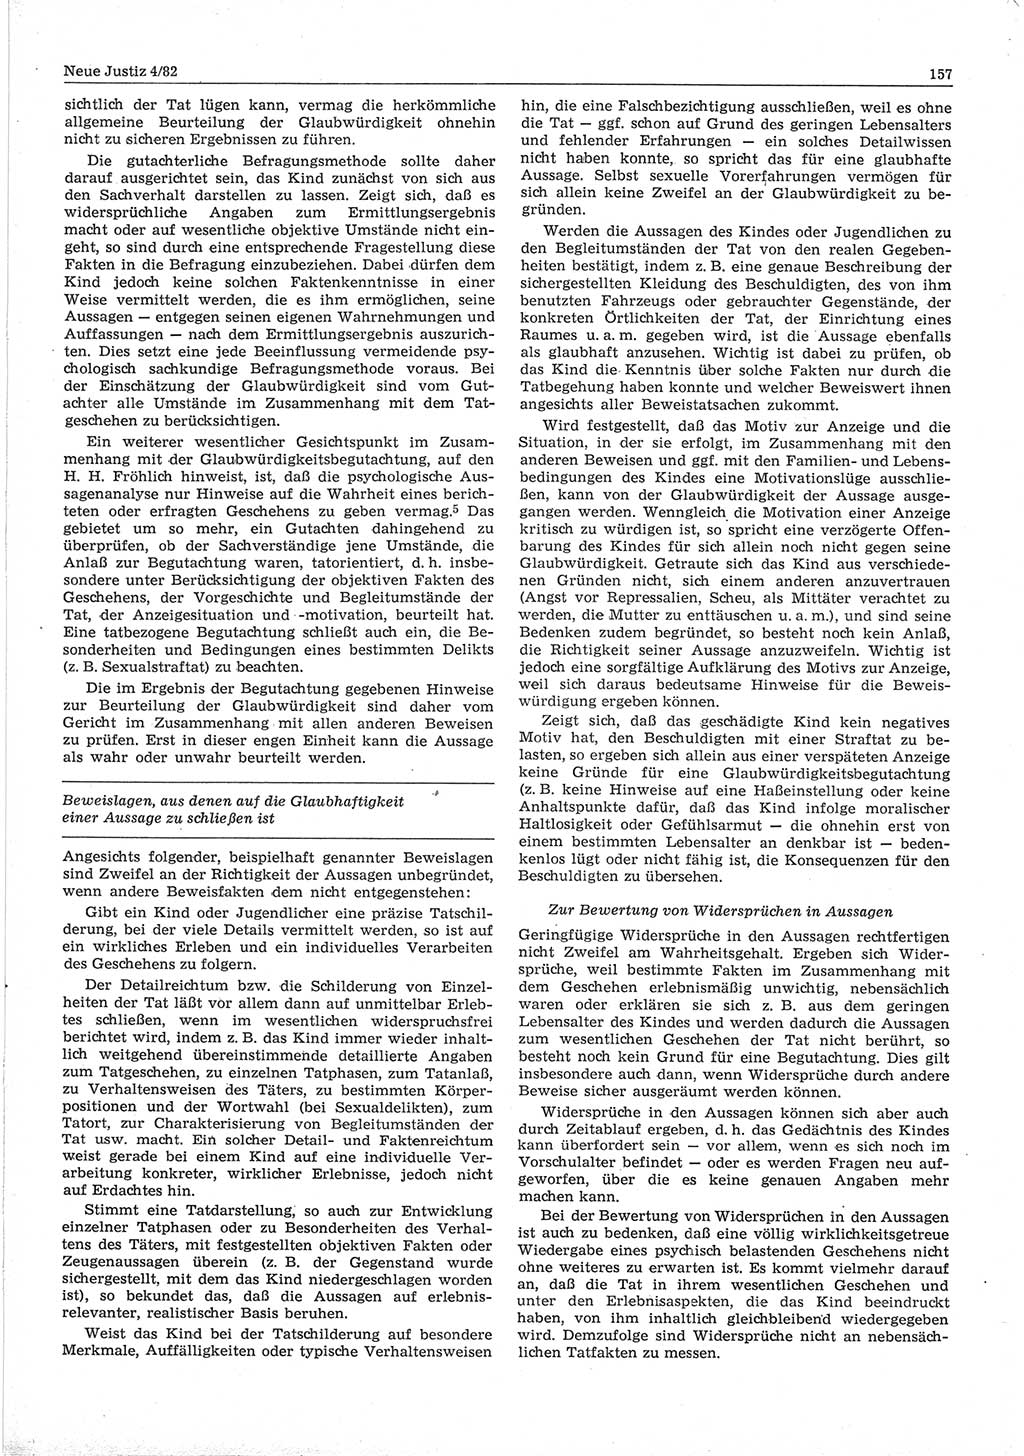 Neue Justiz (NJ), Zeitschrift für sozialistisches Recht und Gesetzlichkeit [Deutsche Demokratische Republik (DDR)], 36. Jahrgang 1982, Seite 157 (NJ DDR 1982, S. 157)